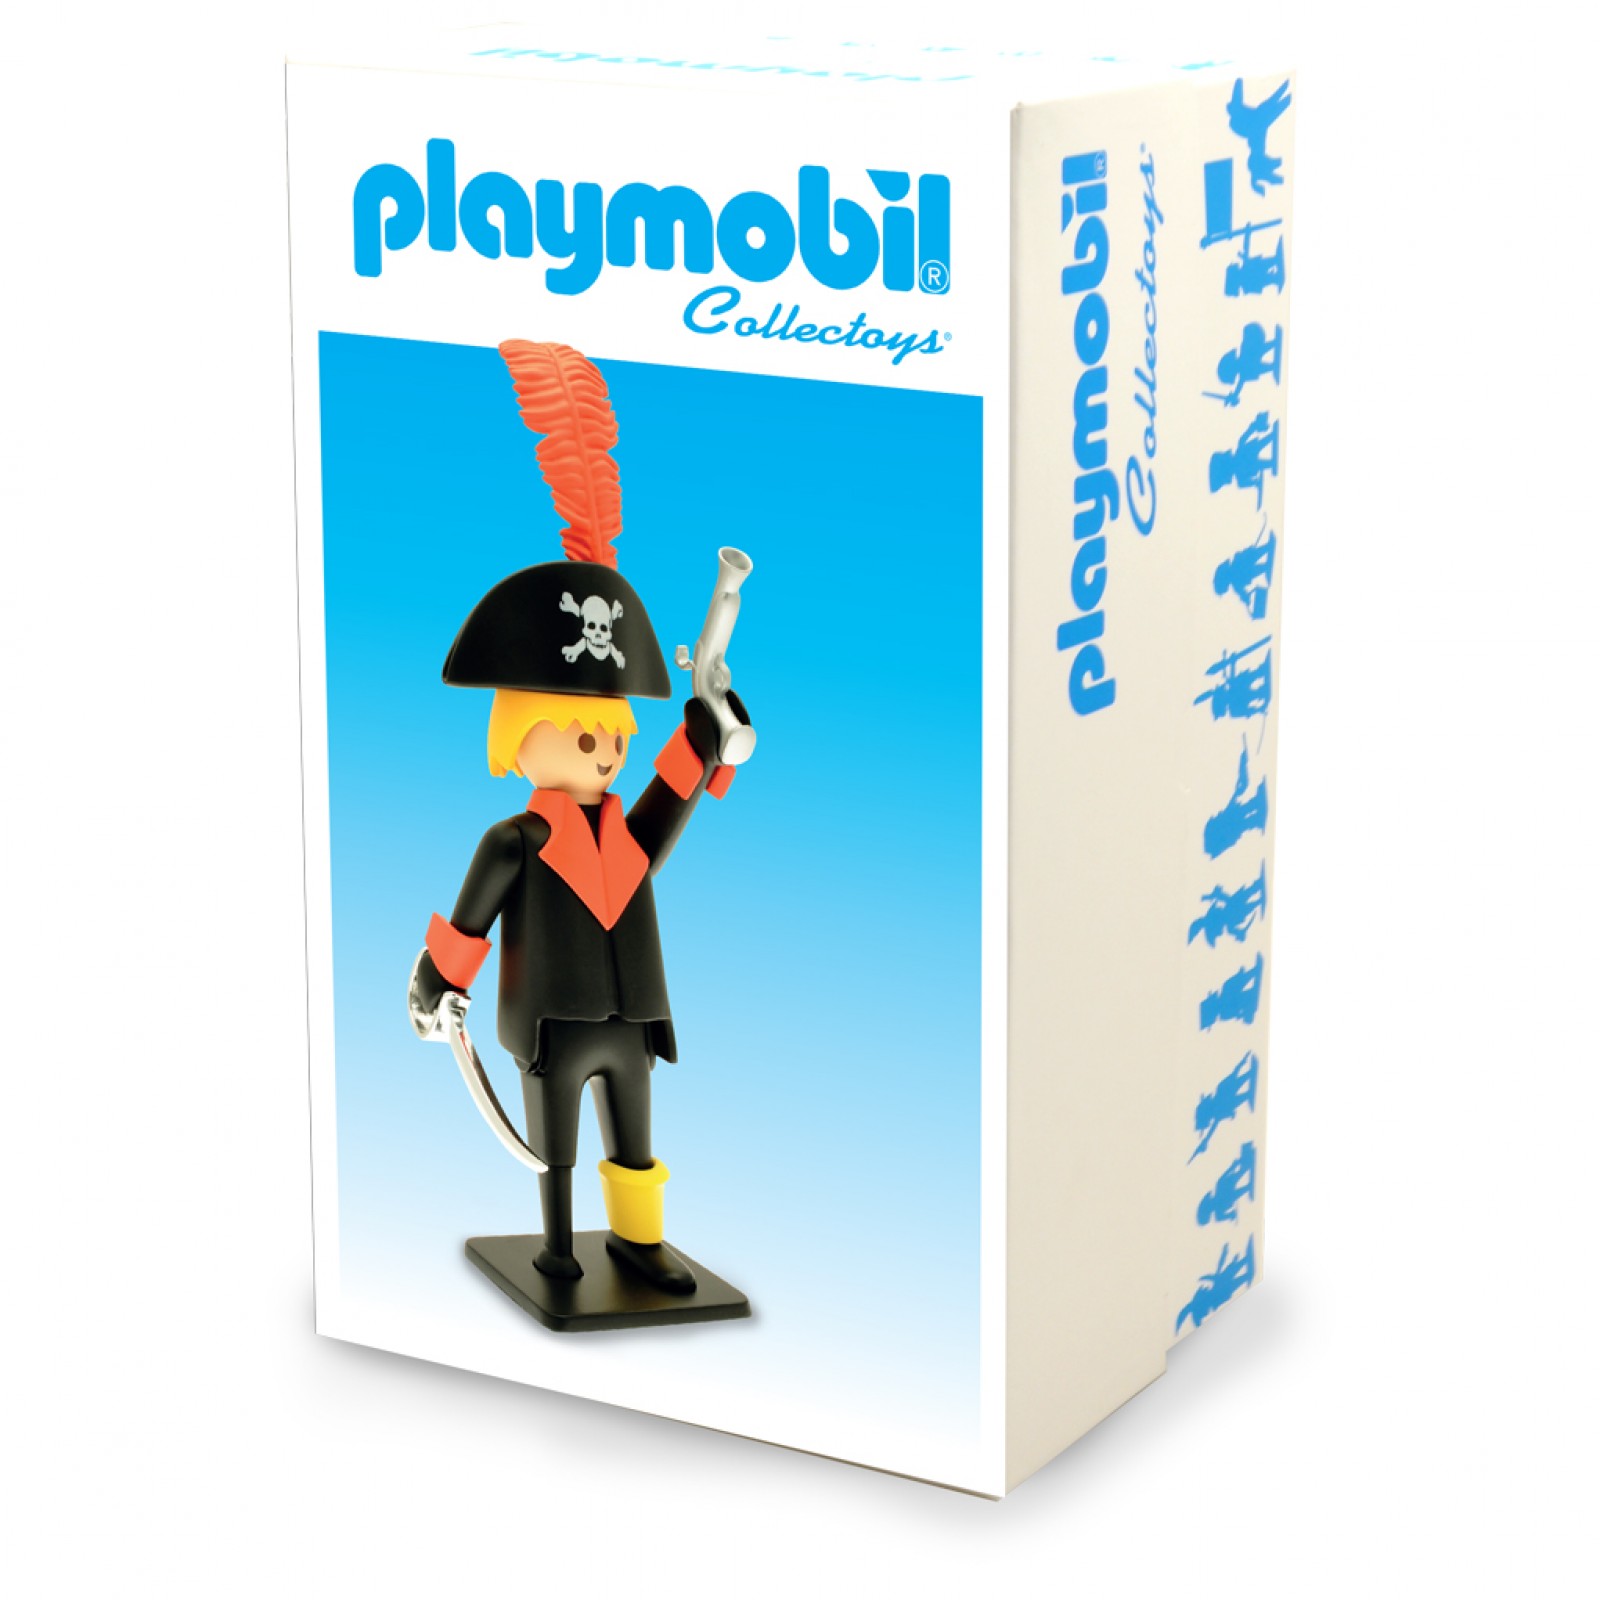 Playmobil géant aux Galeries Lafayette